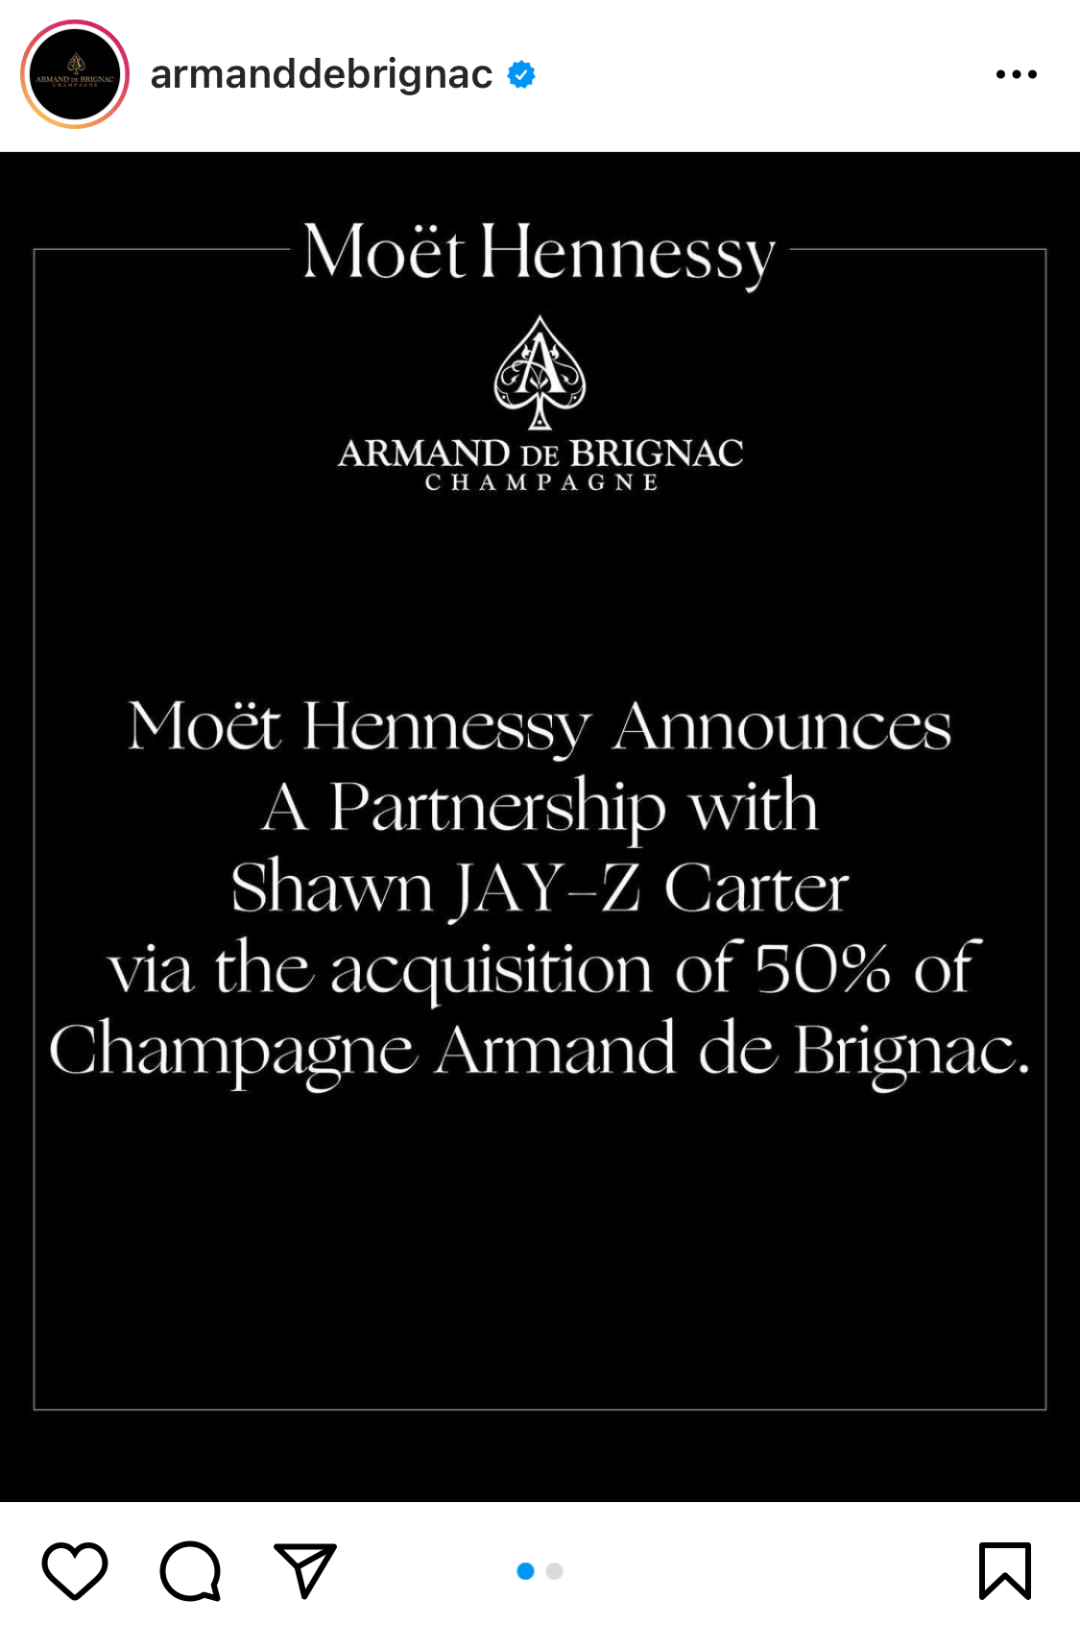 酩悦轩尼诗集团宣布收购黑桃 A 香槟 50% 的股份